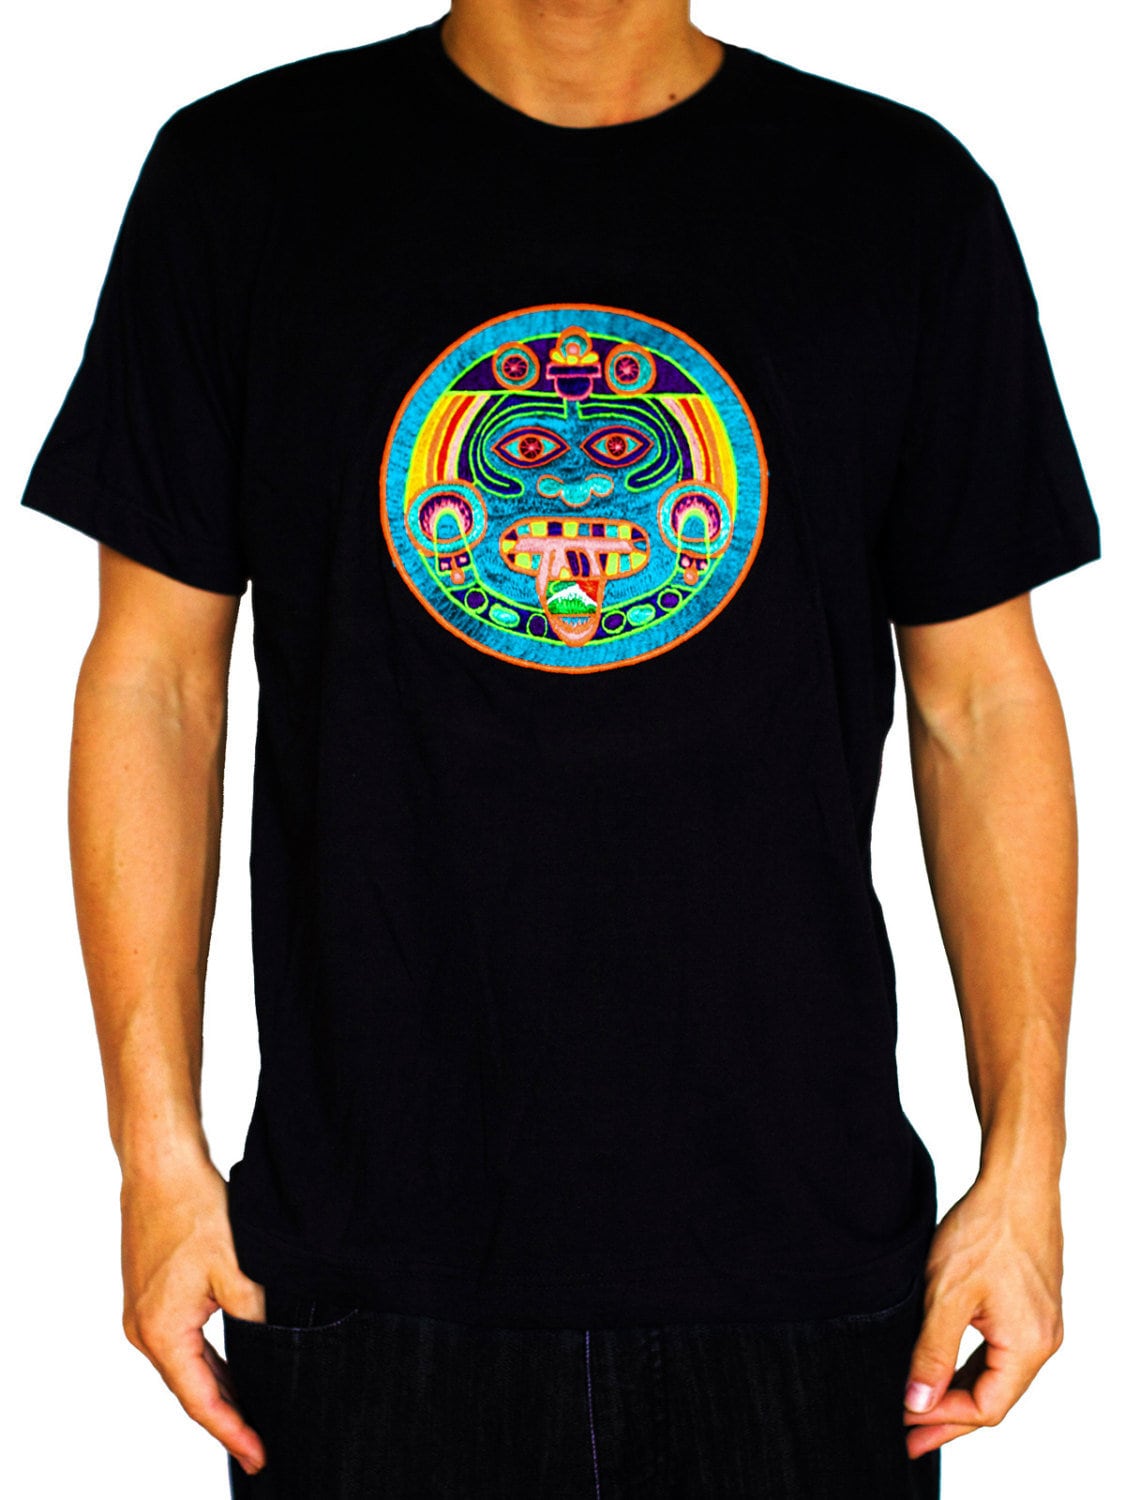 Maya Hofmann 2012 T-Shirt - ancient LSD calendar blacklight handmade embroidery no print goa t-shirt